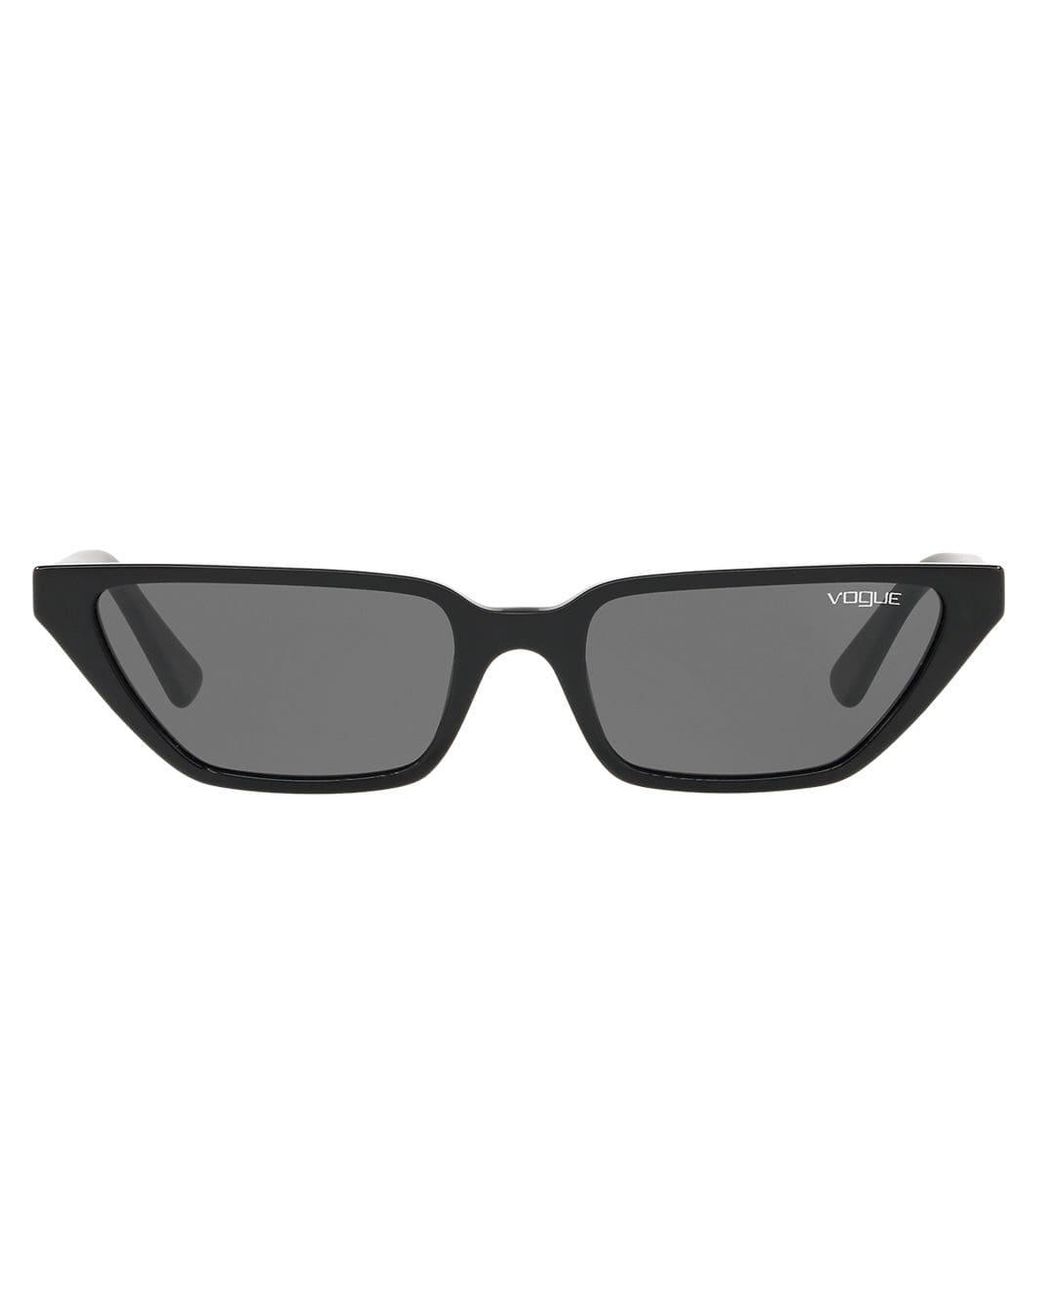 Vogue Eyewear Gigi Hadid Capsule Low Cat-eye Sunglasses in Black - Lyst